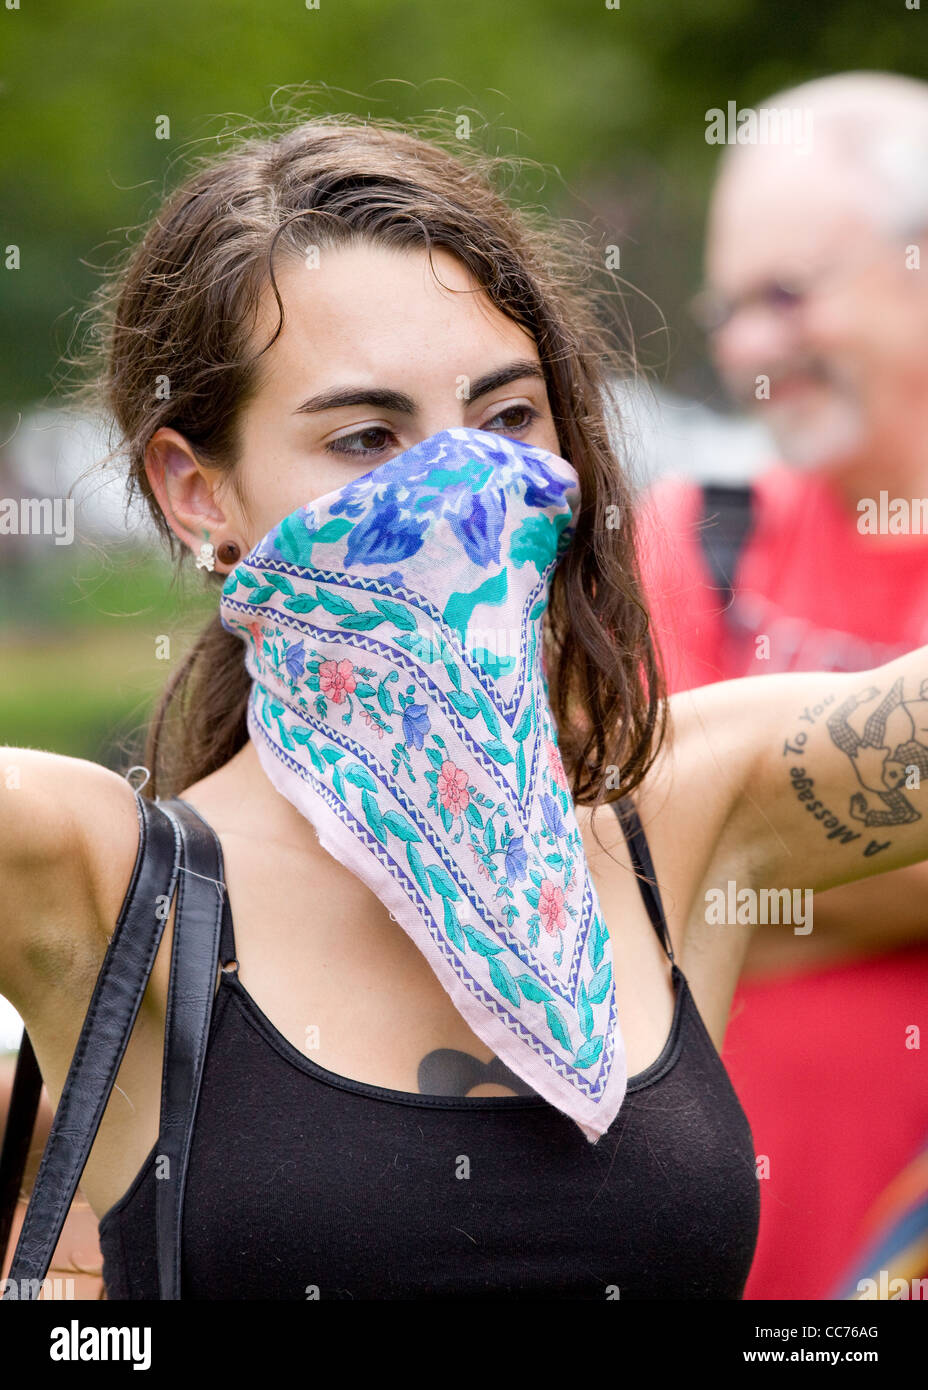 A young woman wearing a bandana mask Stock Photo: 41955272 - Alamy